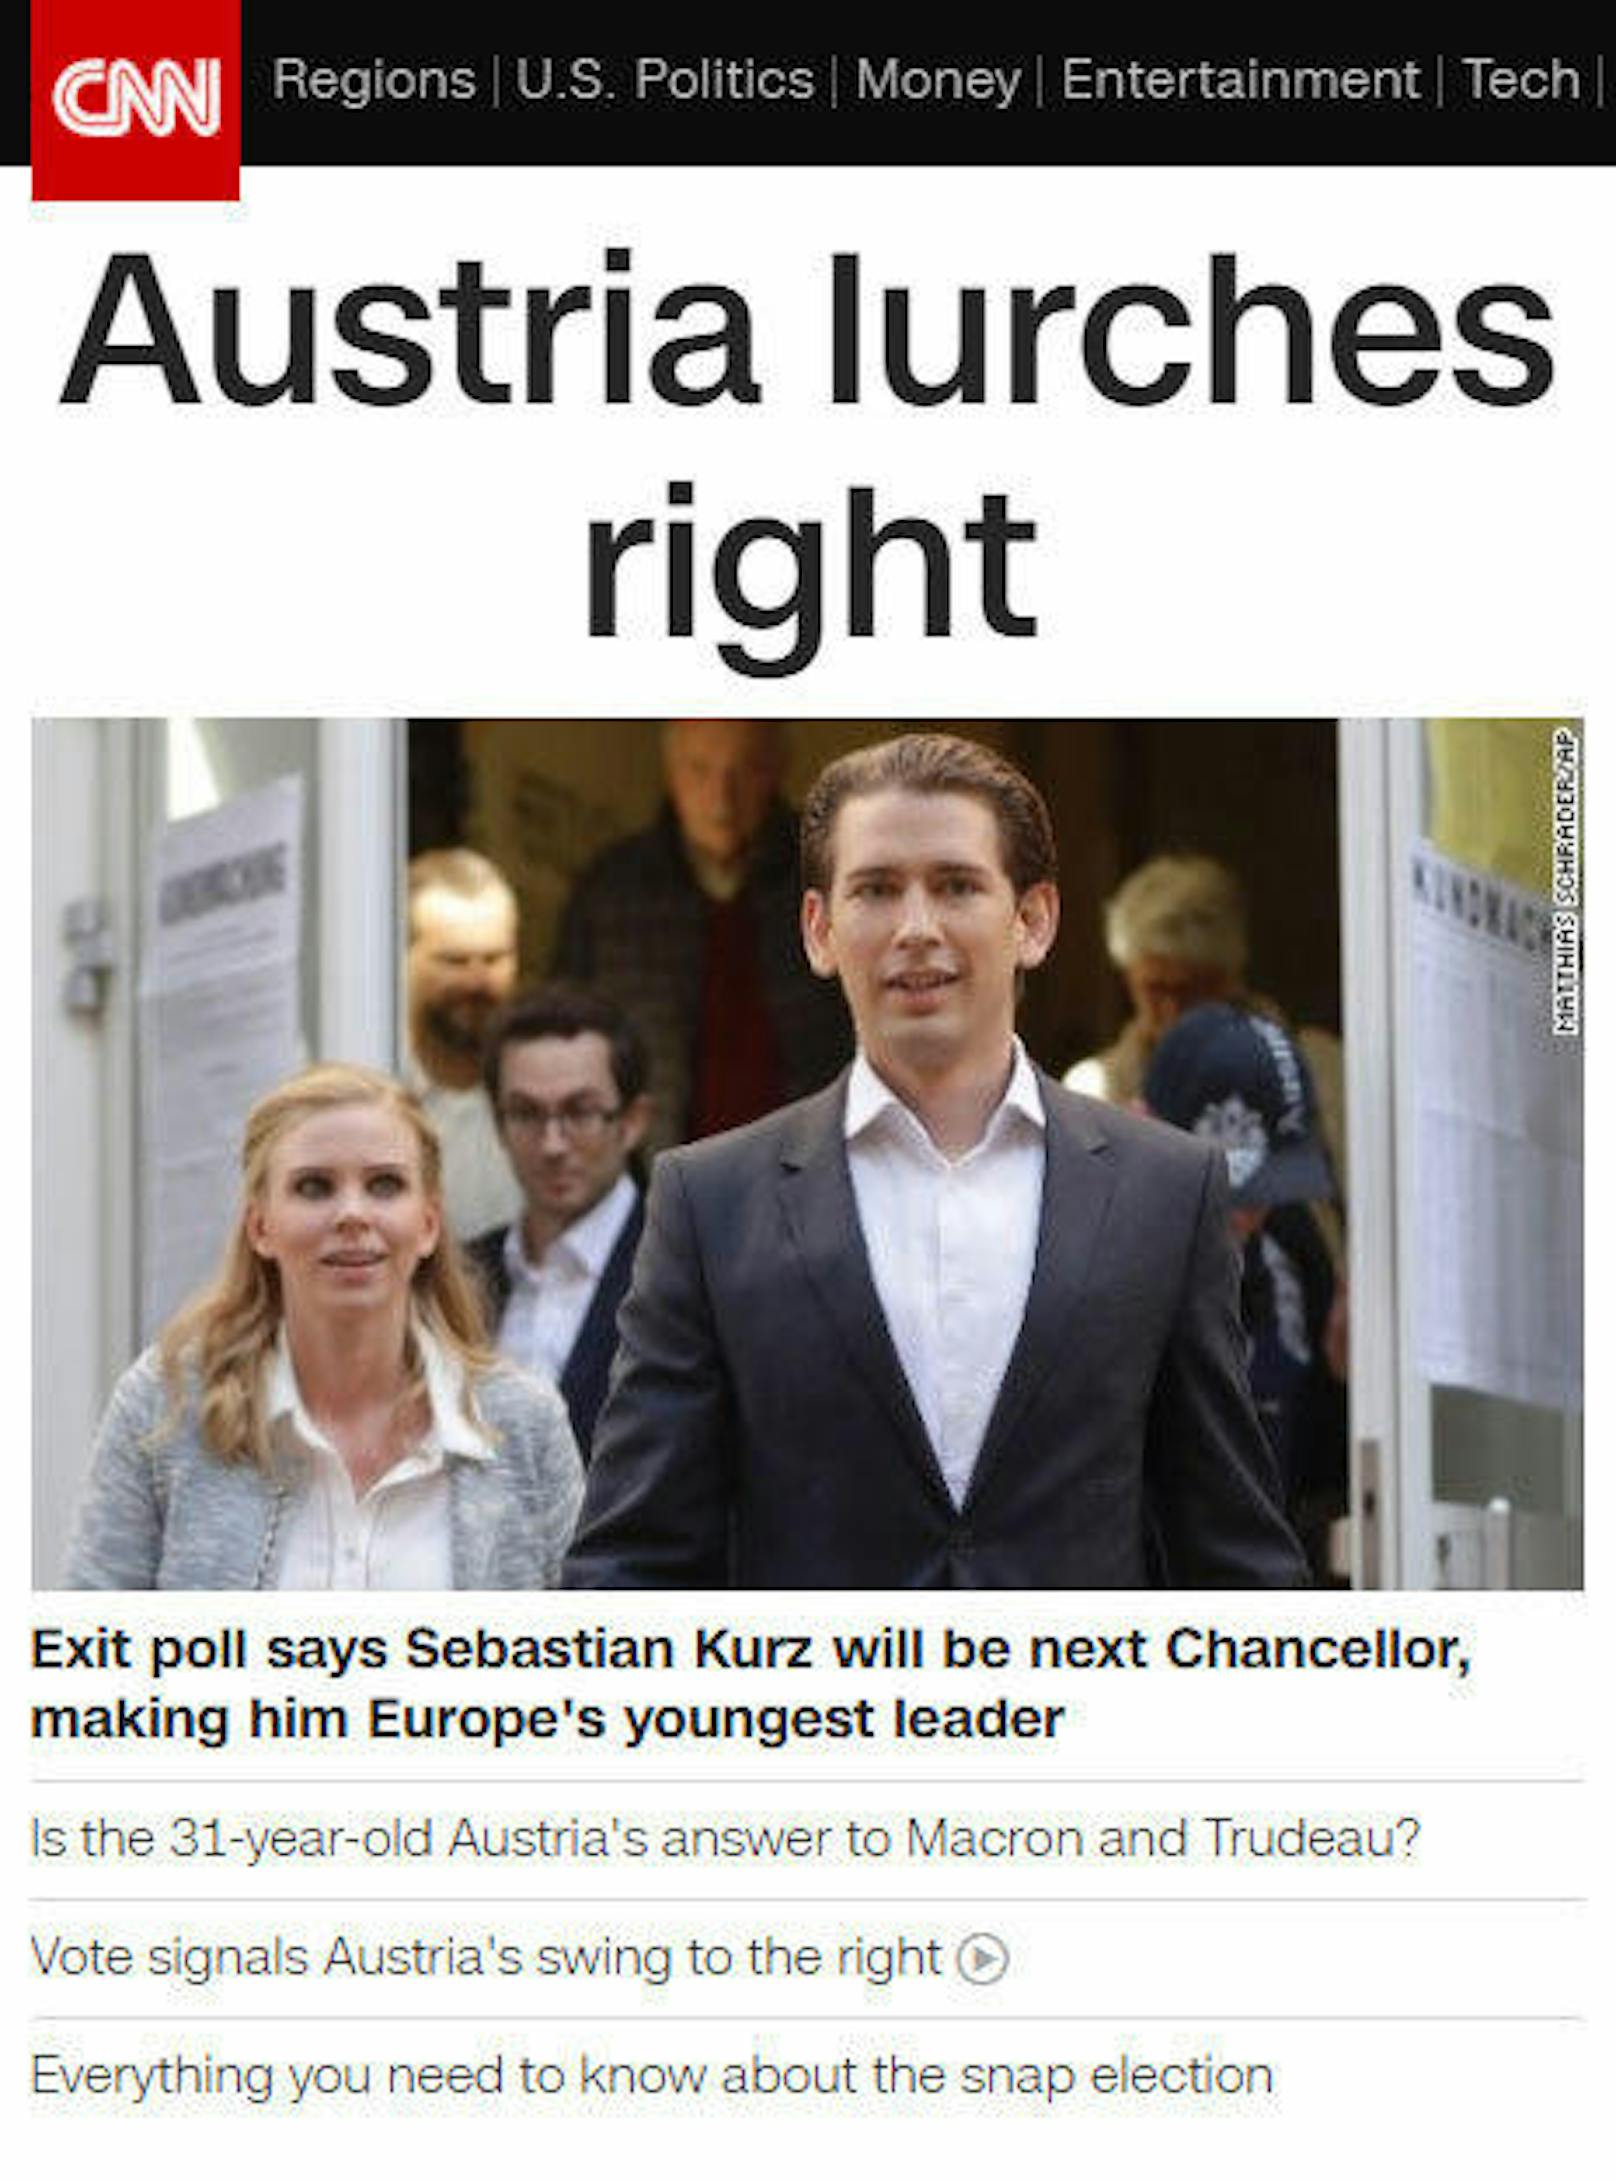 <b>CNN.com:</b> "Österreich taumelt nach rechts"